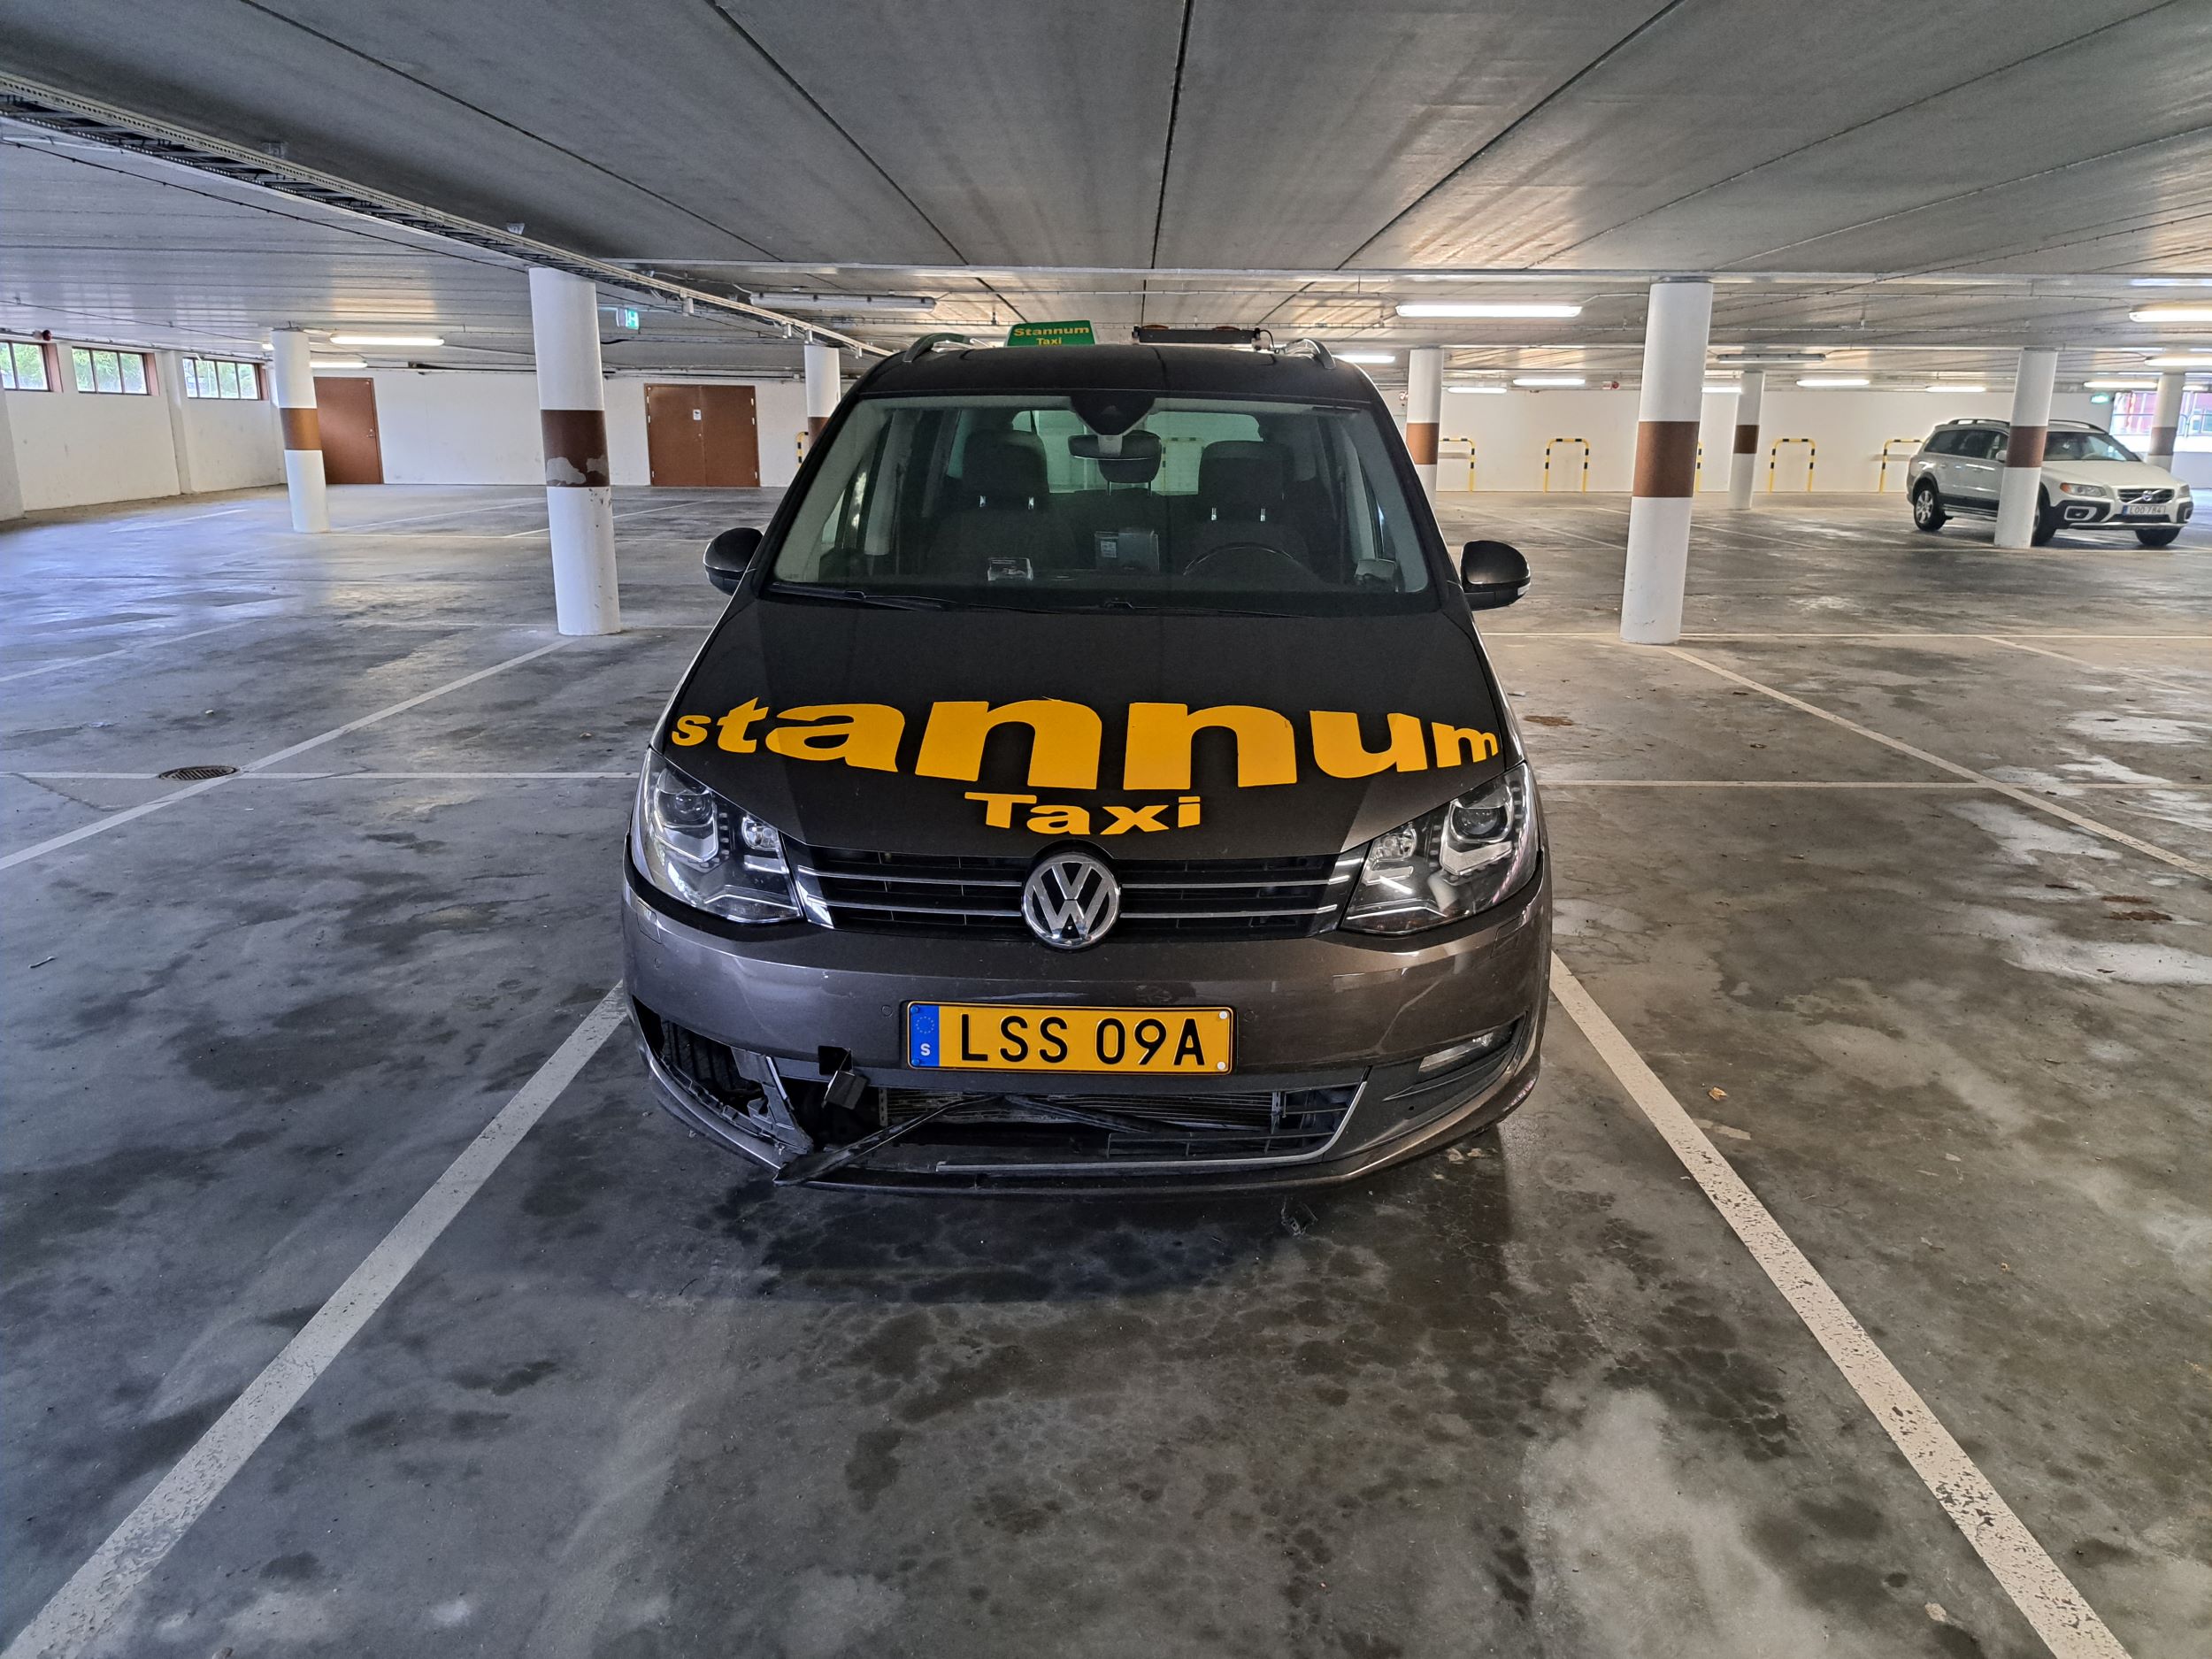 Stannum taxi bil i ett parkeringshus